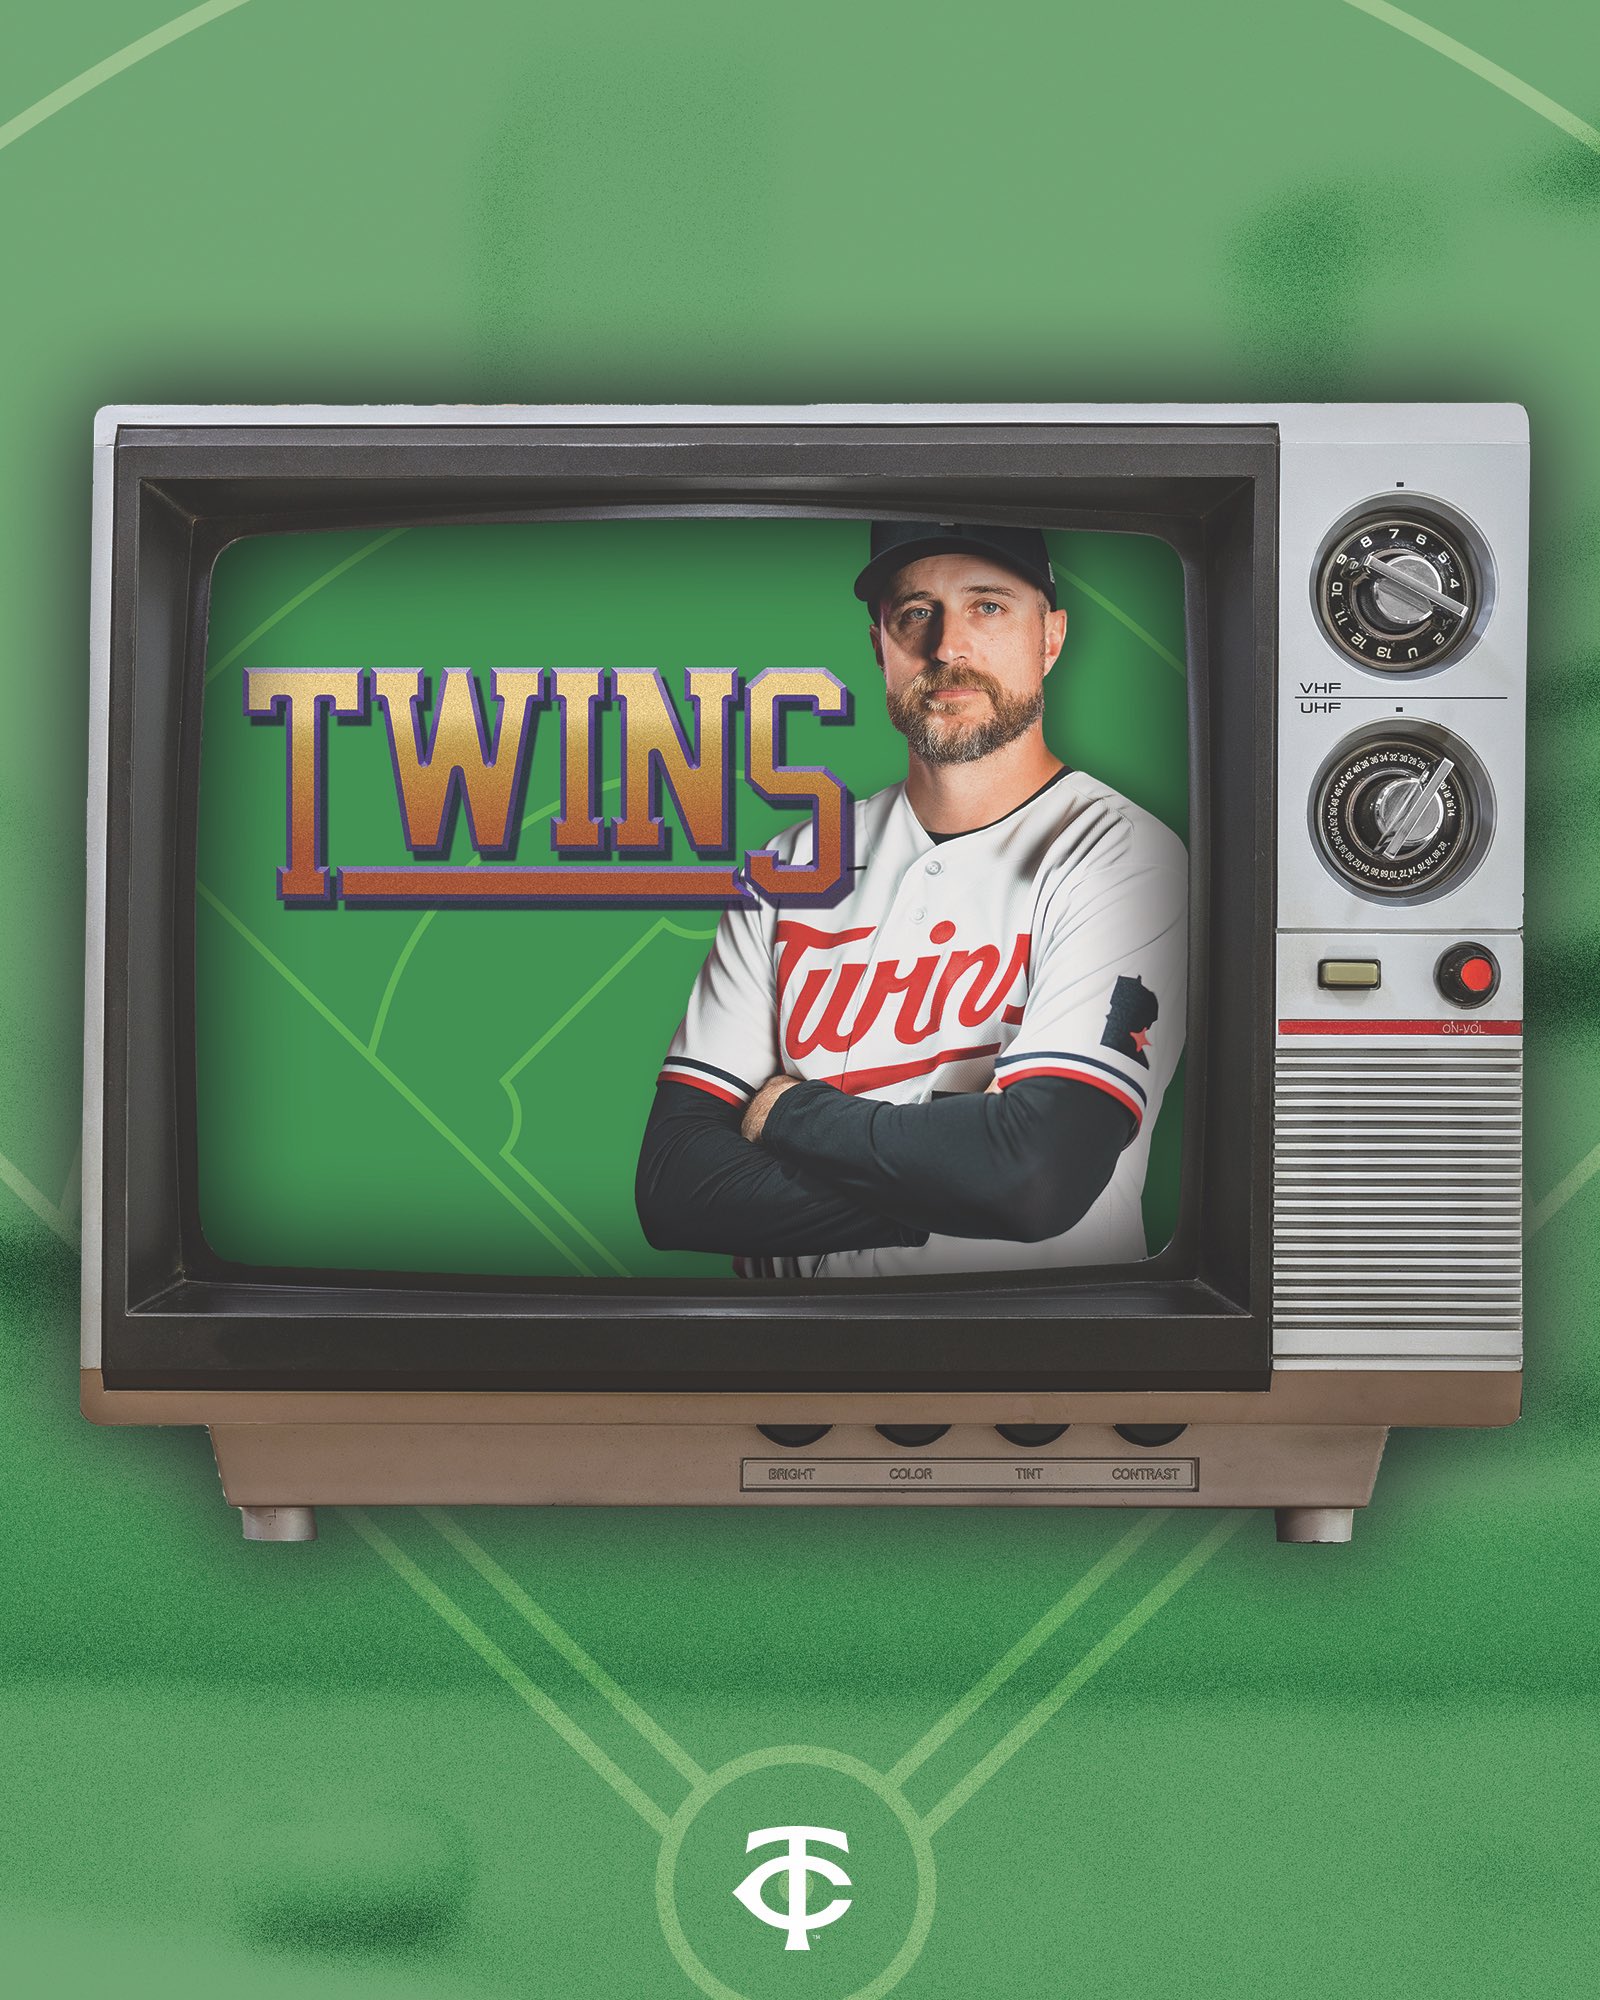 Twins New Era Team Store (@TwinsRetail) / X